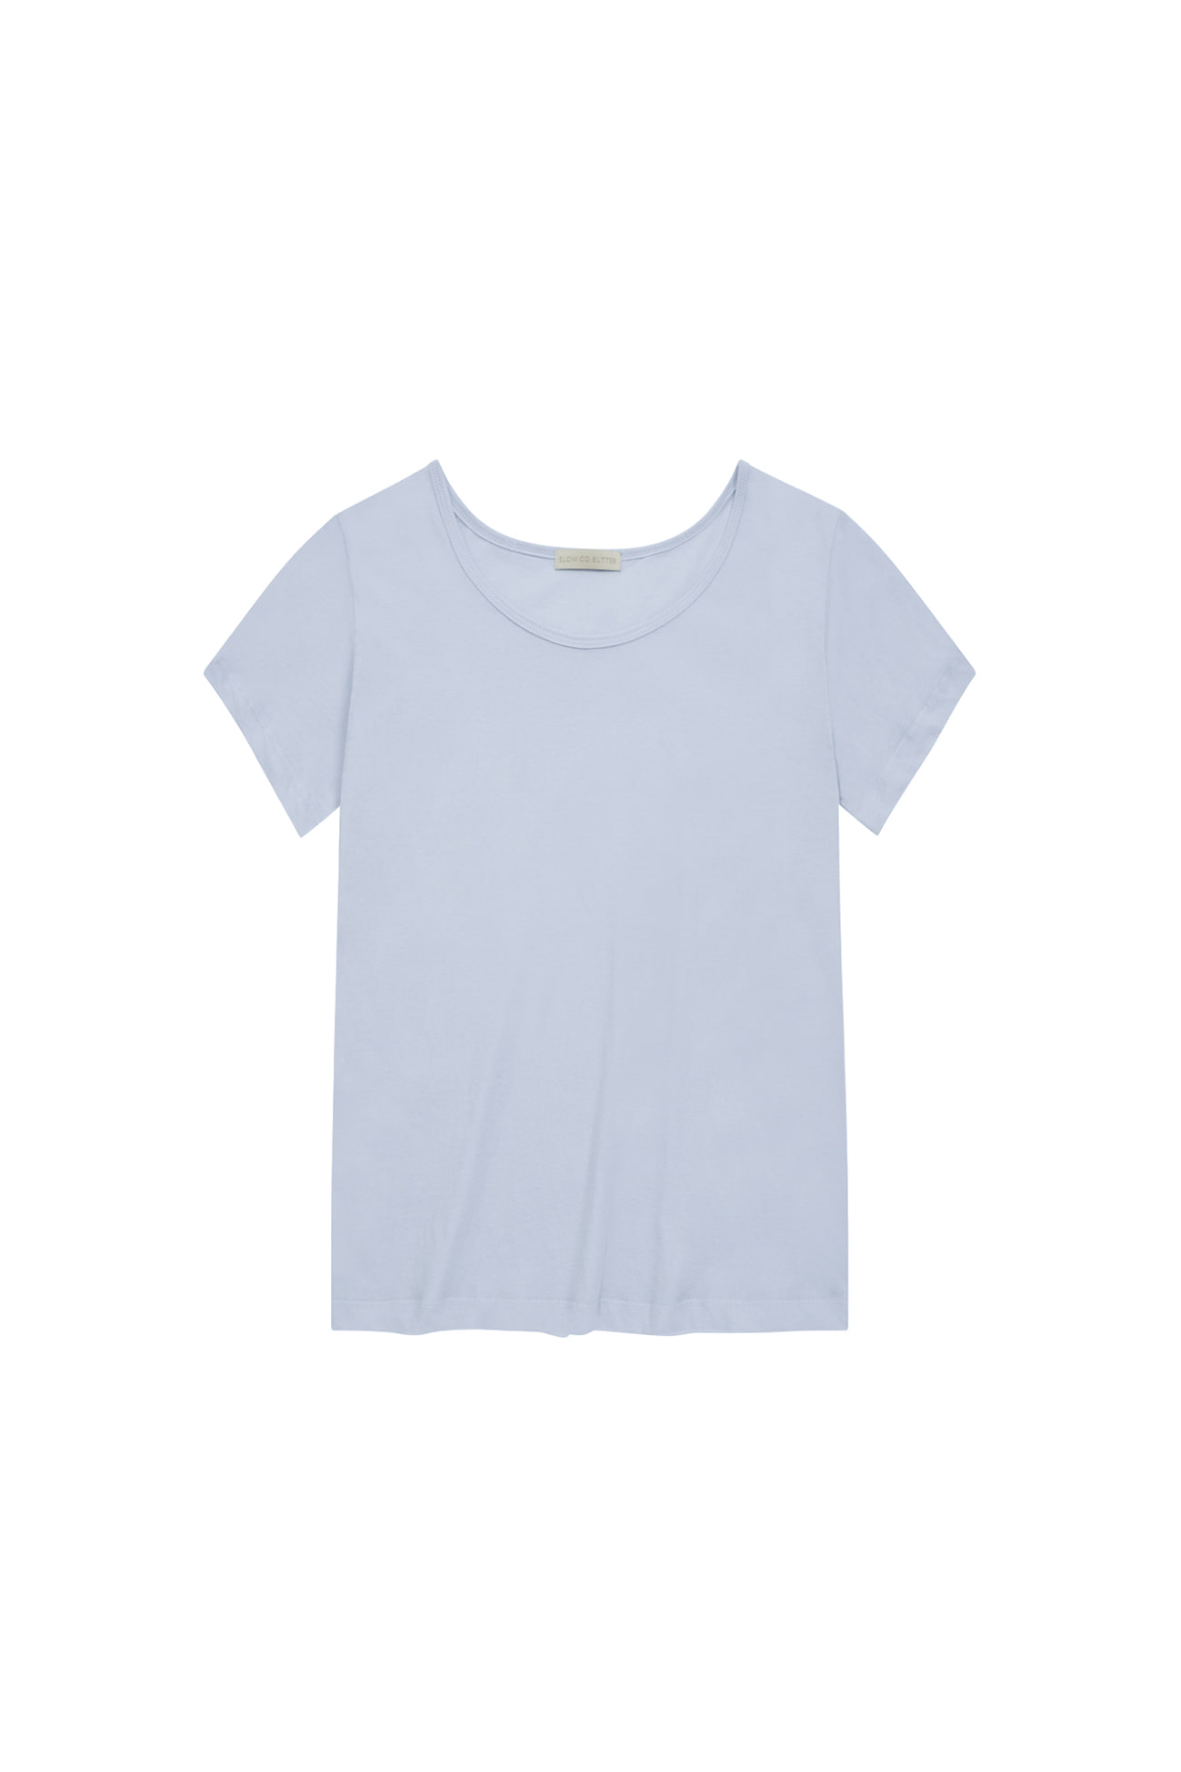 [SLOCO] Soft u neck tshirt, light blue